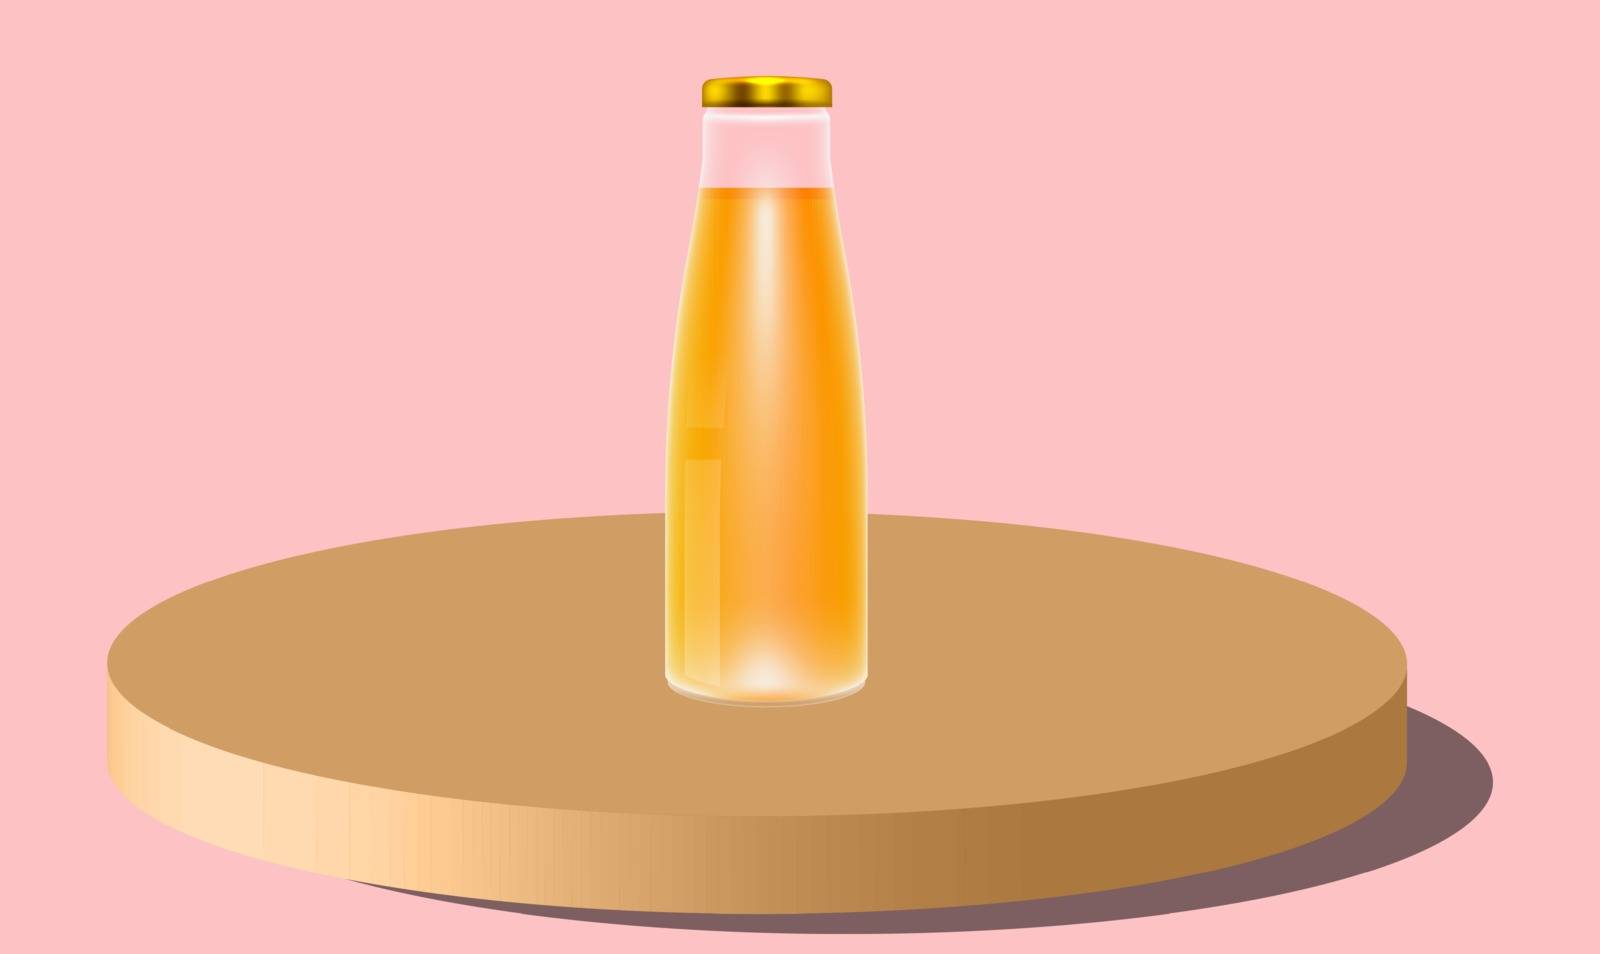 mock up illustration of juice bottle on podium